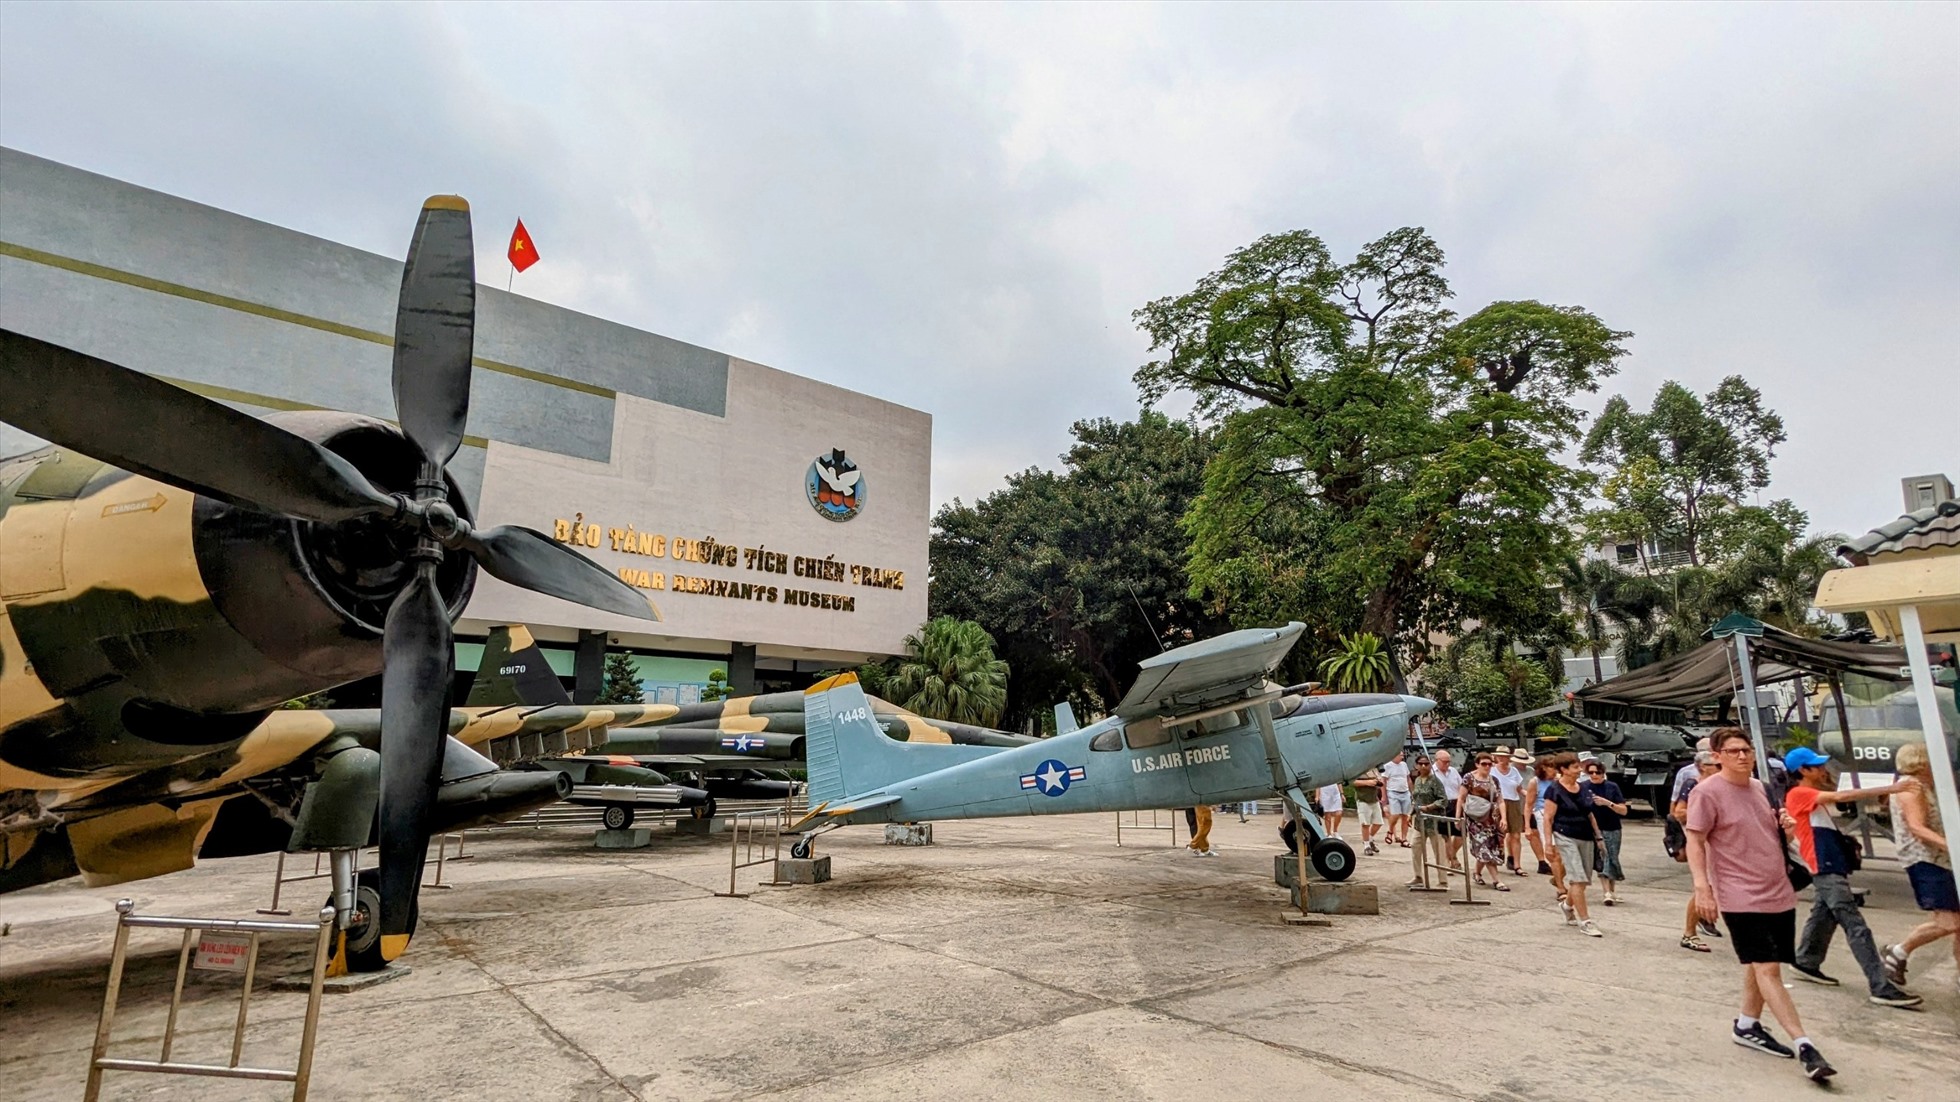 Mới đấy, trong báo cáo tổng hợp từ trang TripAdvisor, Google Reviews, Bảo tàng chứng tích chiến tranh tại TP Hồ Chí Minh đứng thứ 61 trong danh sách 99 điểm đến hấp dẫn du khách nhất thế giới và là đại diện duy nhất của Việt Nam góp mặt trong danh sách này.